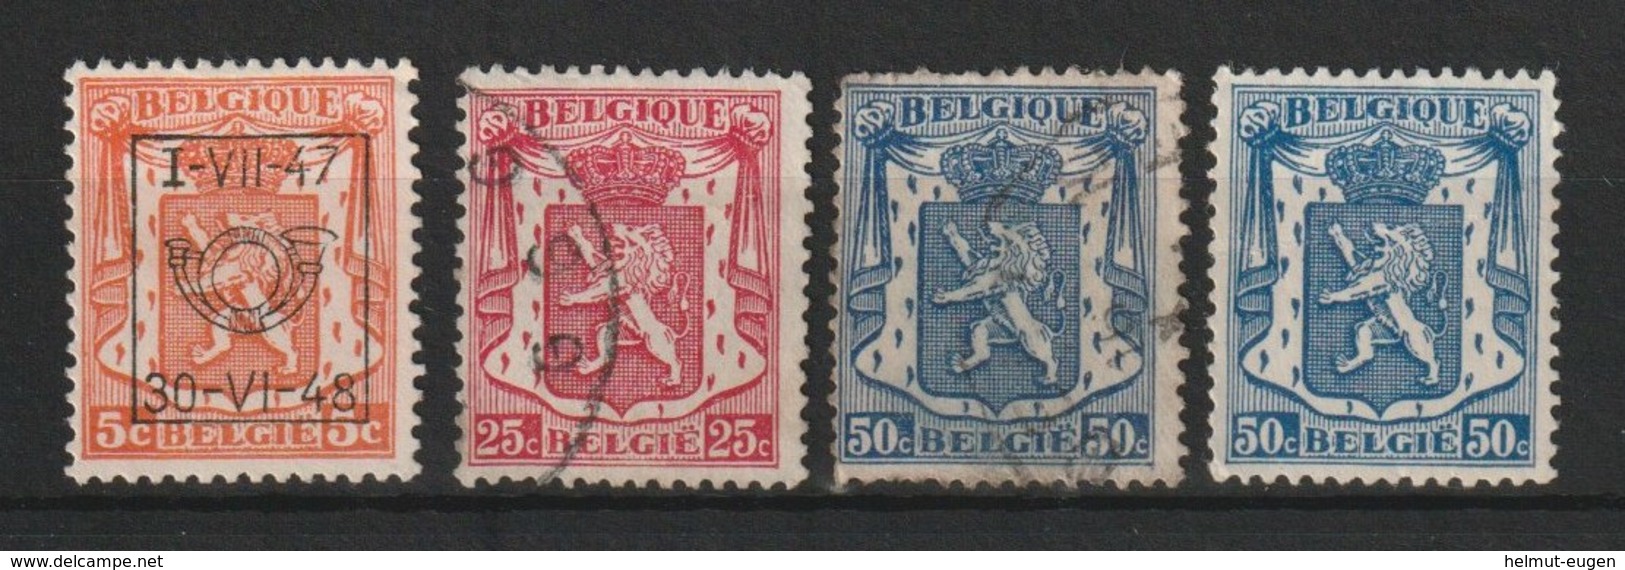 MiNr. 415, 419, 422 Belgien / 1936, 5. Febr. Freimarken: Staatswappen - 1929-1937 Heraldic Lion